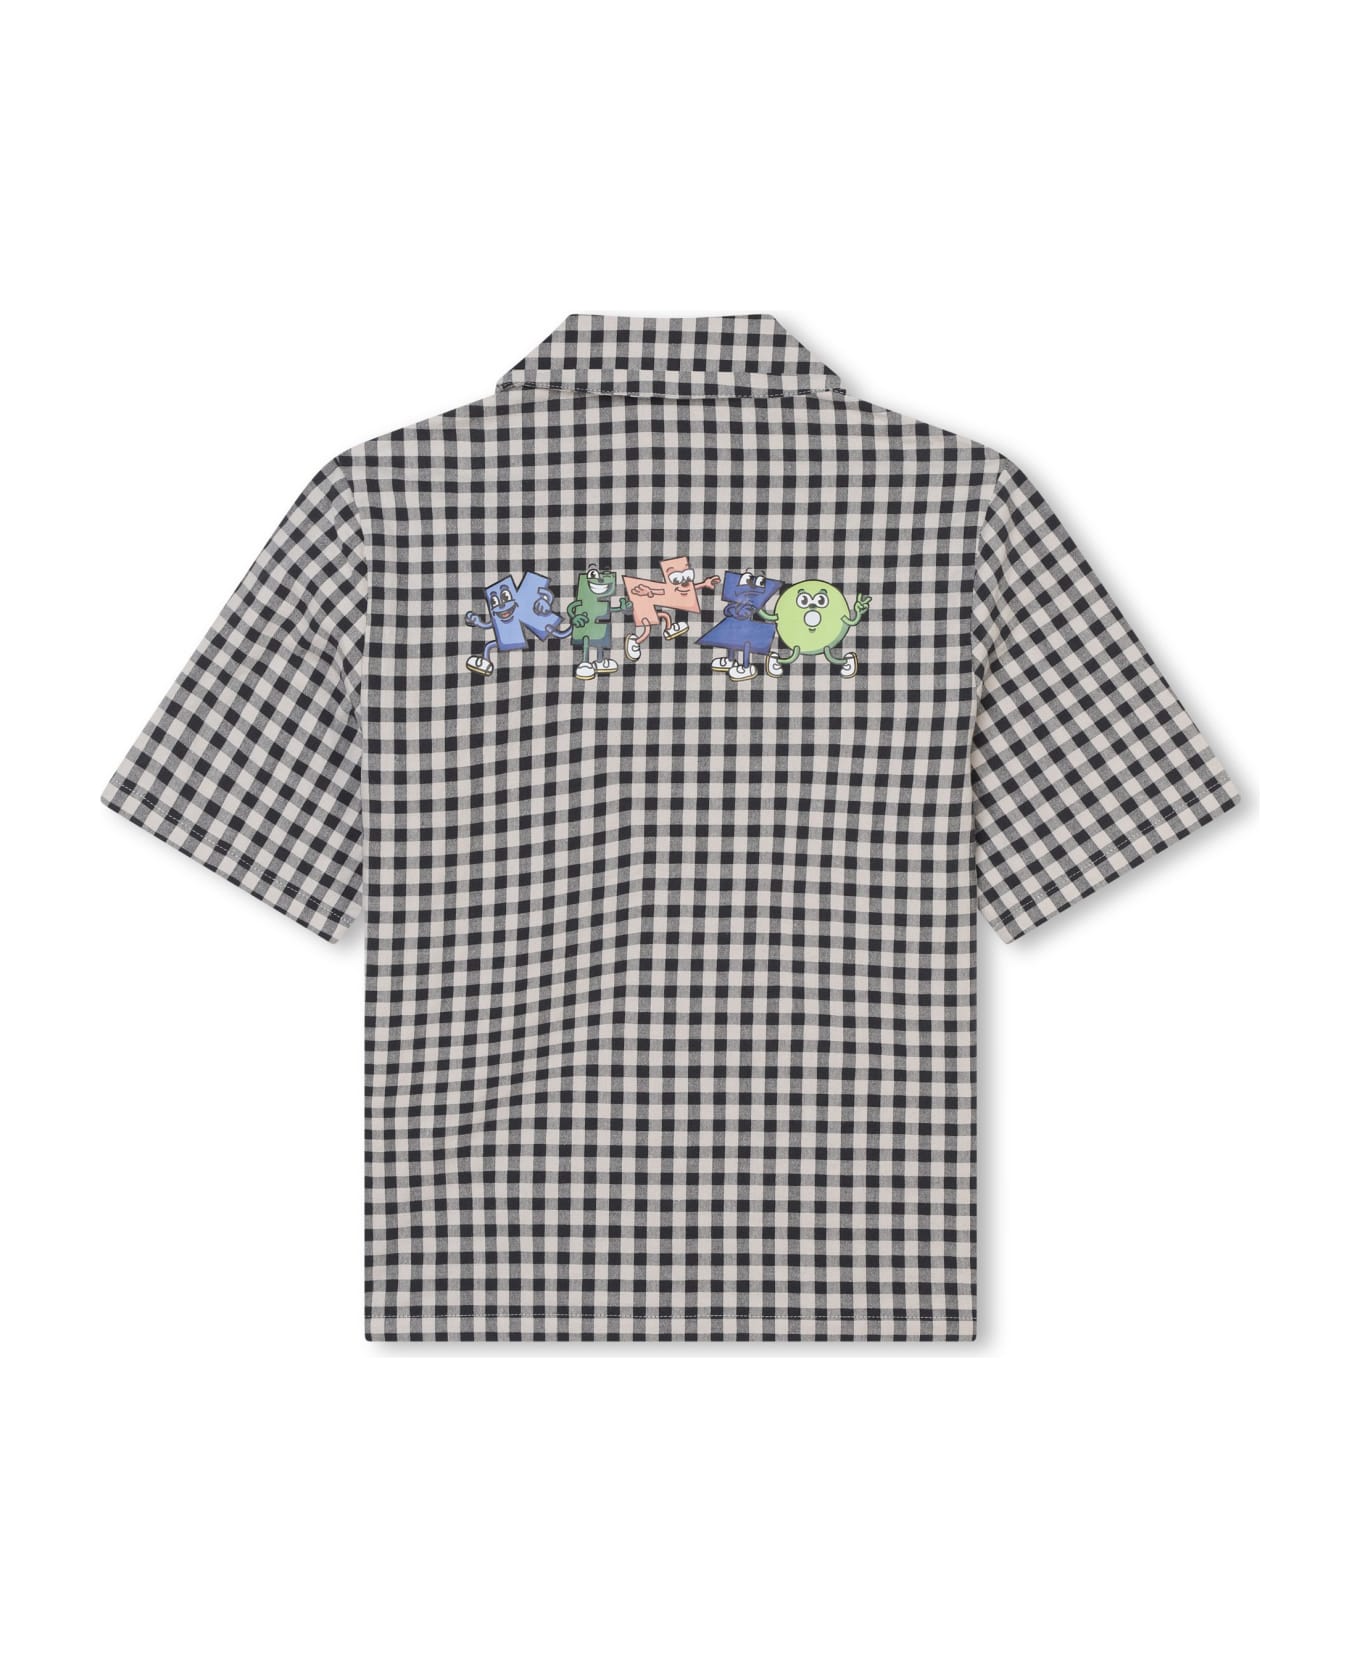 Kenzo Kids Camicia A Quadri - Gray シャツ